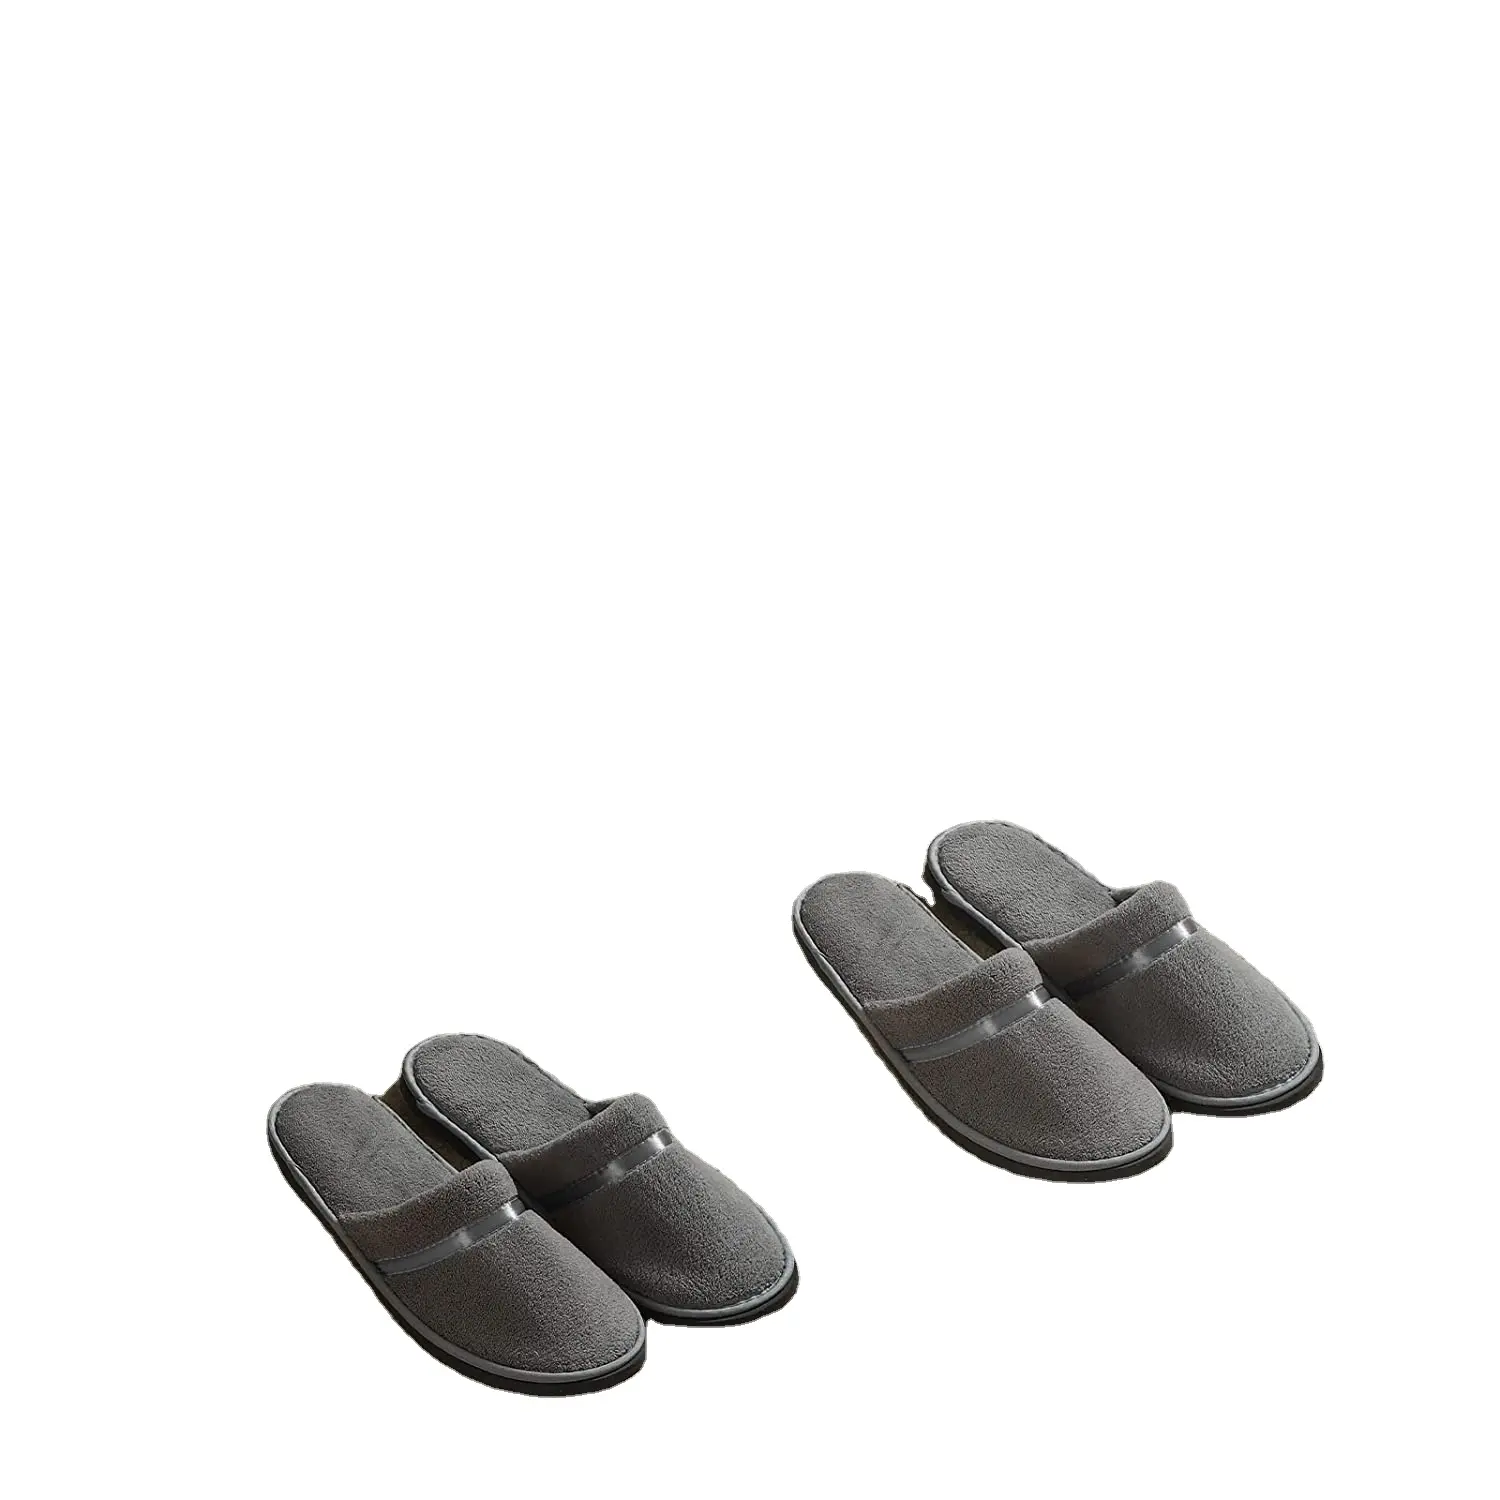 Coral Velvet Hote Closed Toe Einweg pantoffeln Wasch barer Pantoffel Wieder verwendbare Hausschuhe für Gäste Badezimmer reisen (grau) PVC EVA